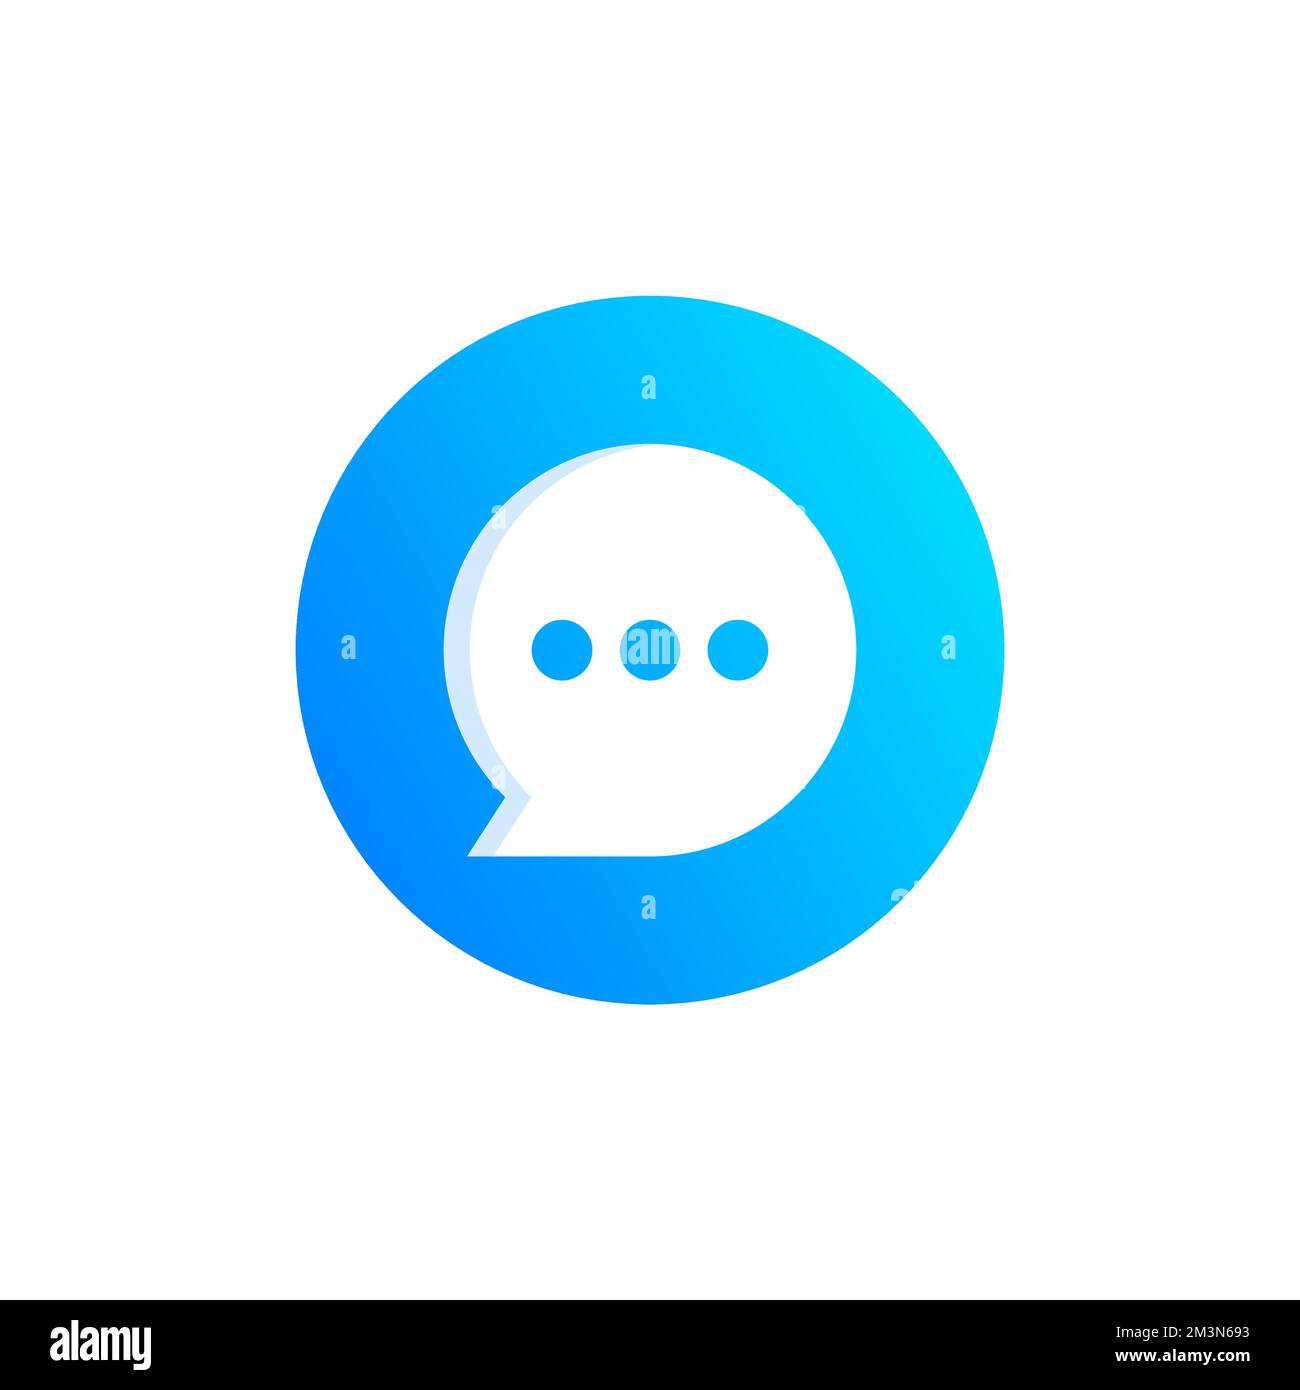 Design de l'icône de chat. Concept du logo Messenger. Icône bleue du bouton de discussion. Icône de l'application de messagerie mobile sur les réseaux sociaux. Illustration vectorielle moderne et colorée Illustration de Vecteur